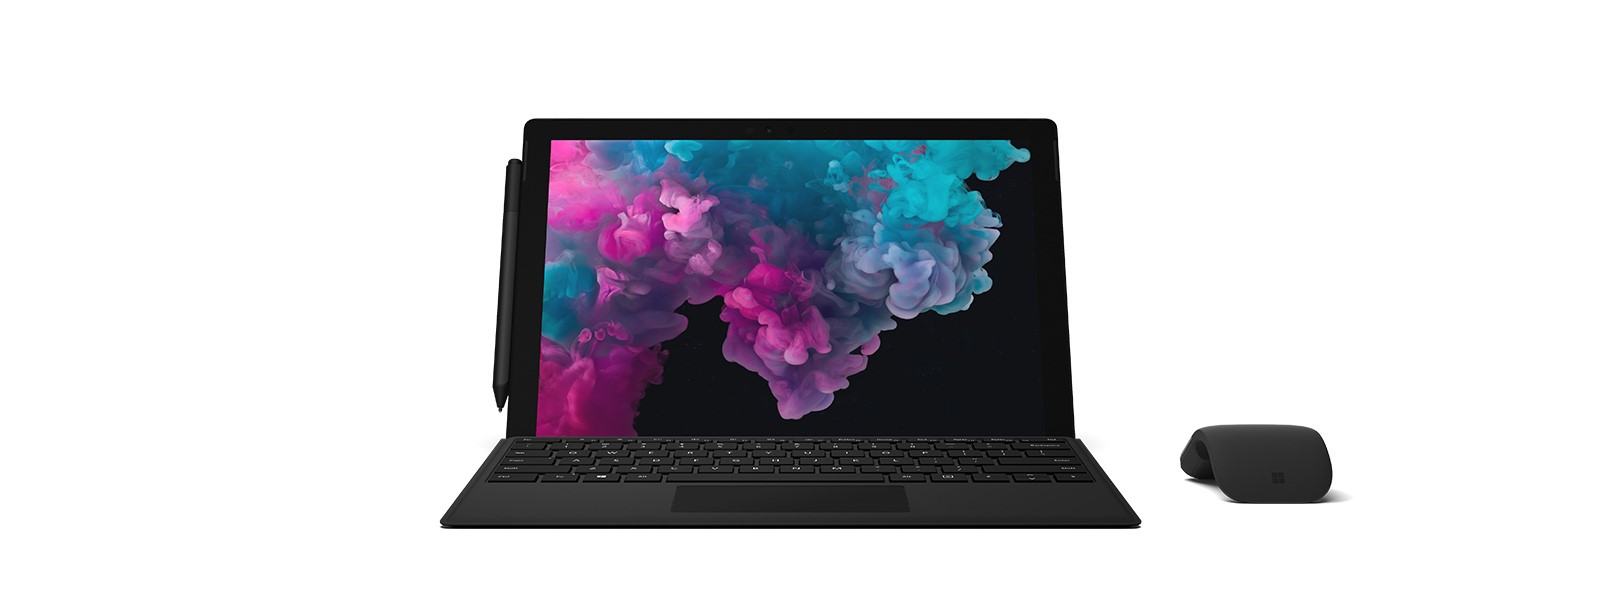 Microsoft Surface Pro 6 2-in-1 Laptop Intel Core 8th Gen i7 12.3